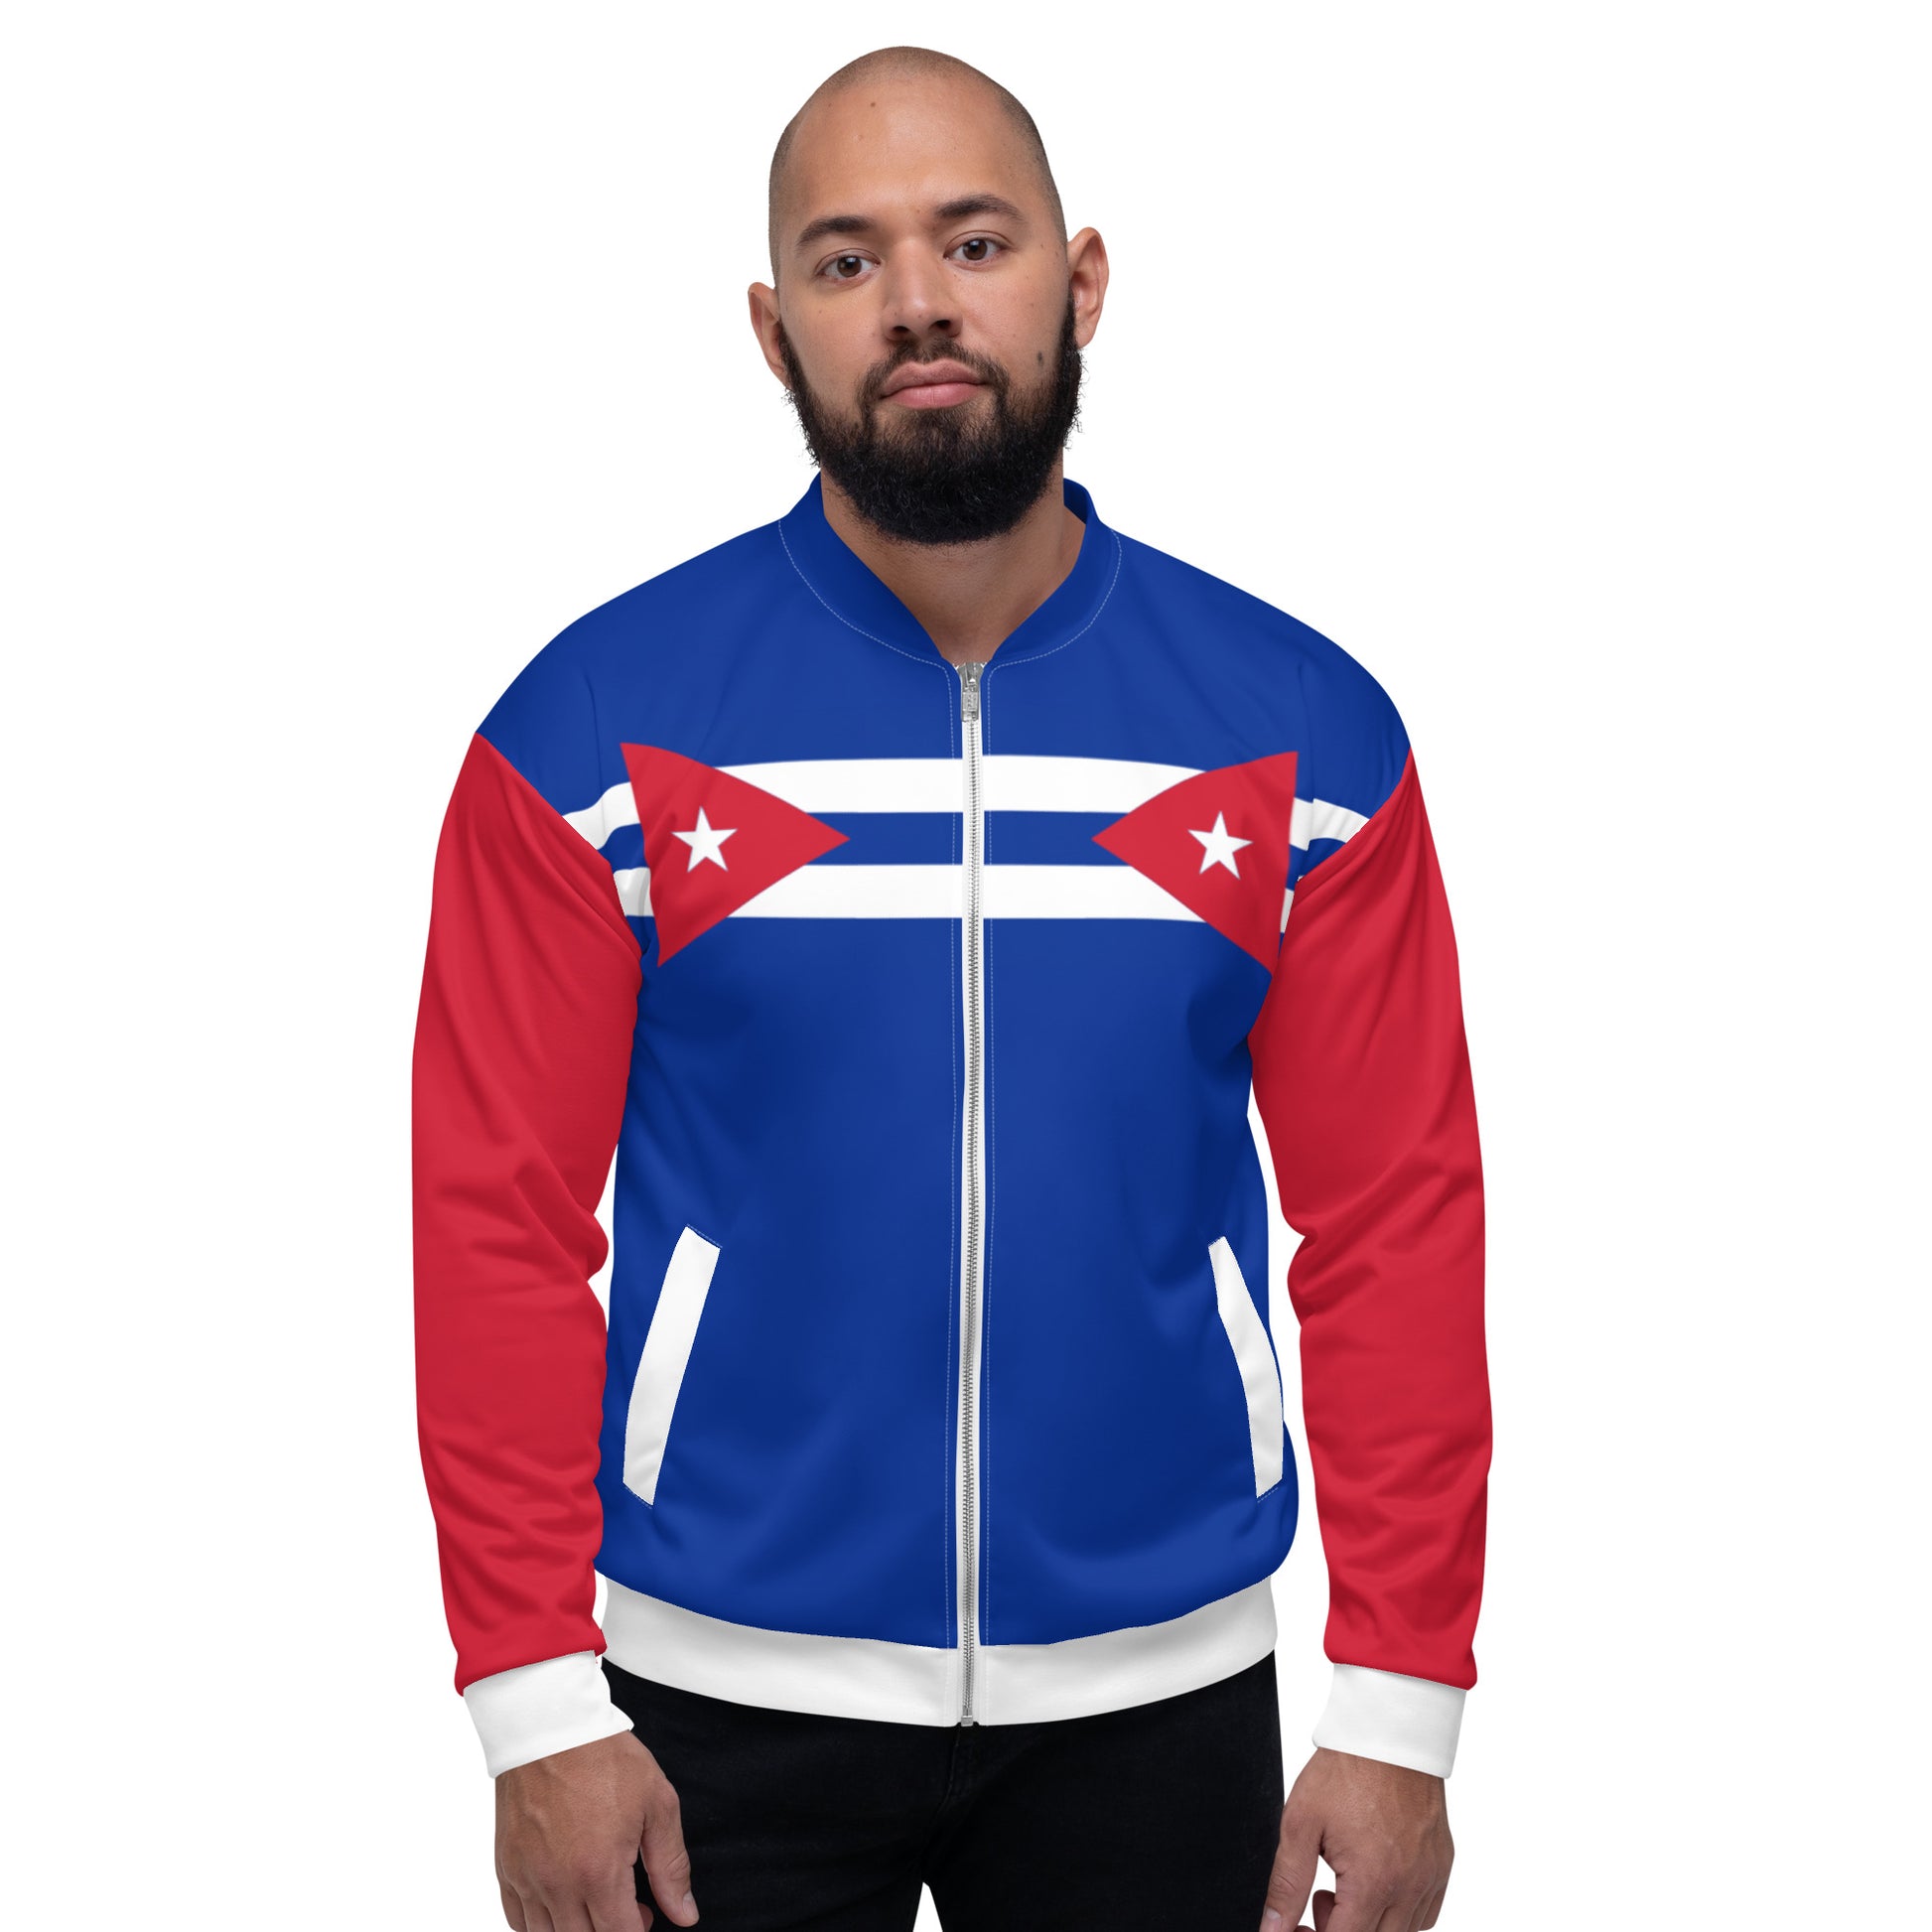 Cuban Flag Jacket / Blue Bomber Jacket / Cuban Style Clothing